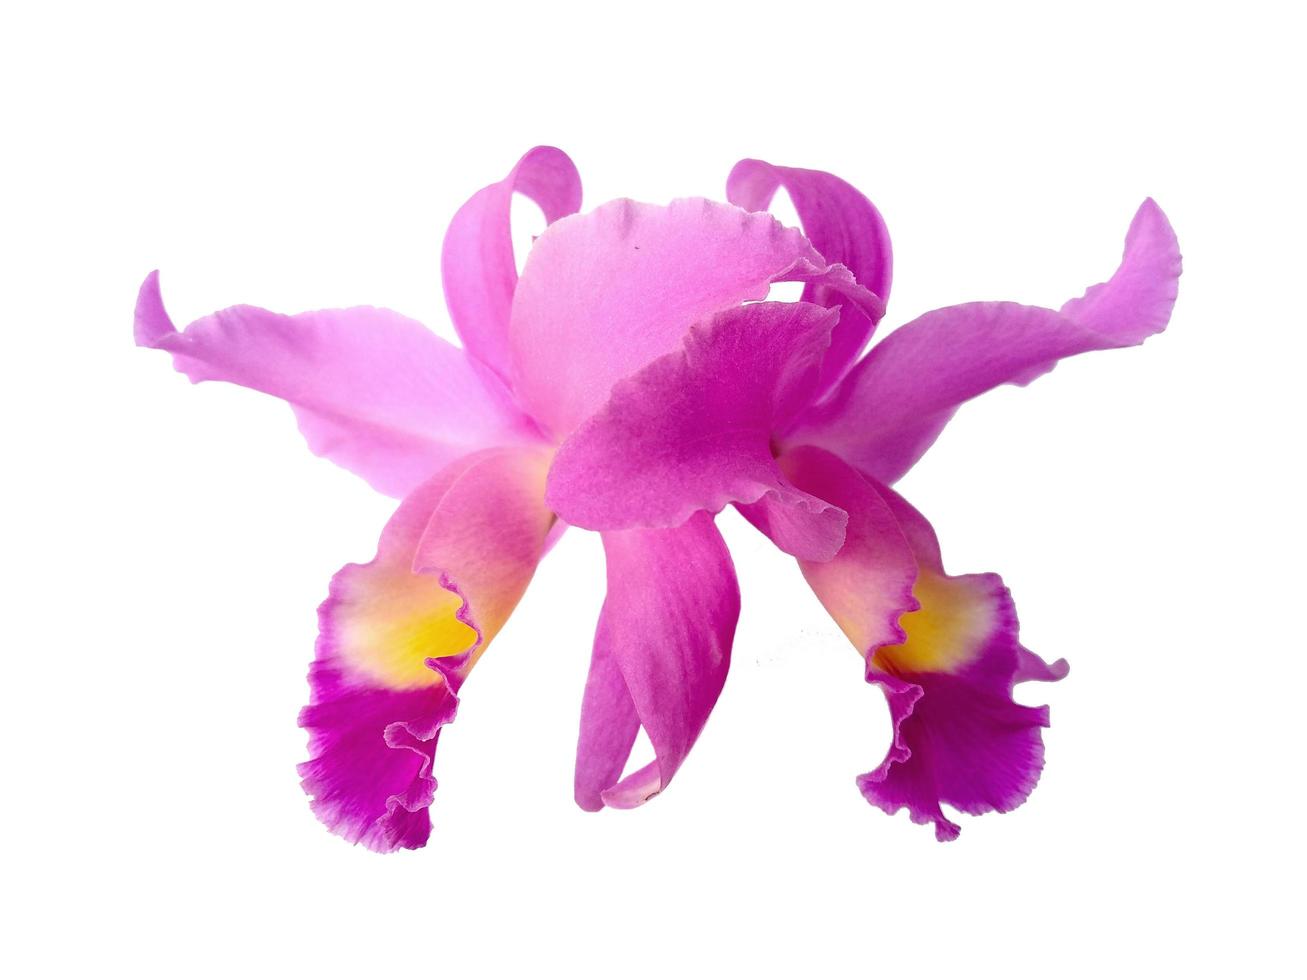 lindas flores roxas da orquídea cattleya isoladas no fundo branco foto